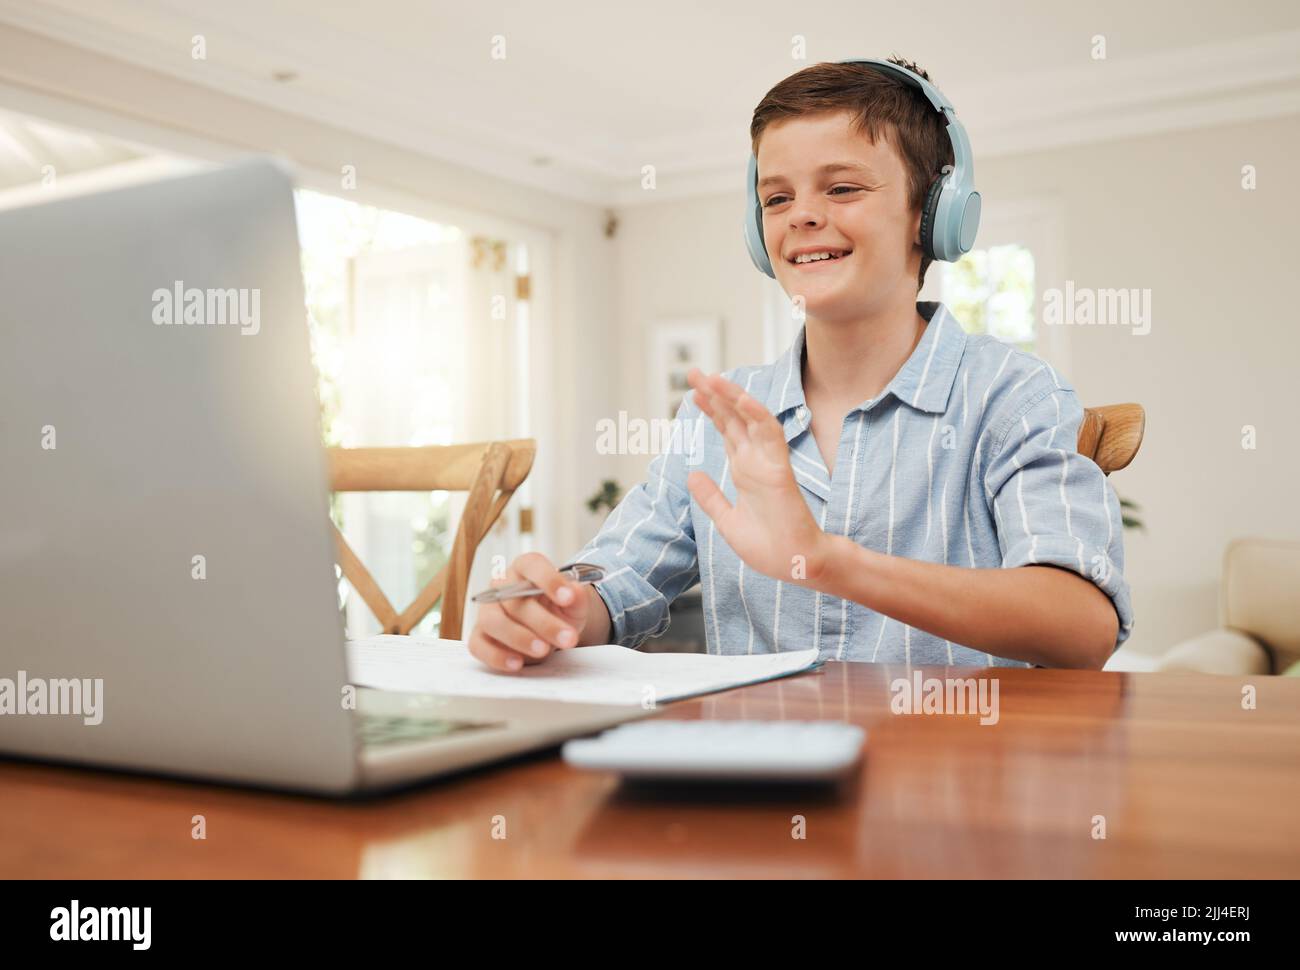 Ama la nuova normalità, un ragazzo che frequenta la sua classe online a casa. Foto Stock